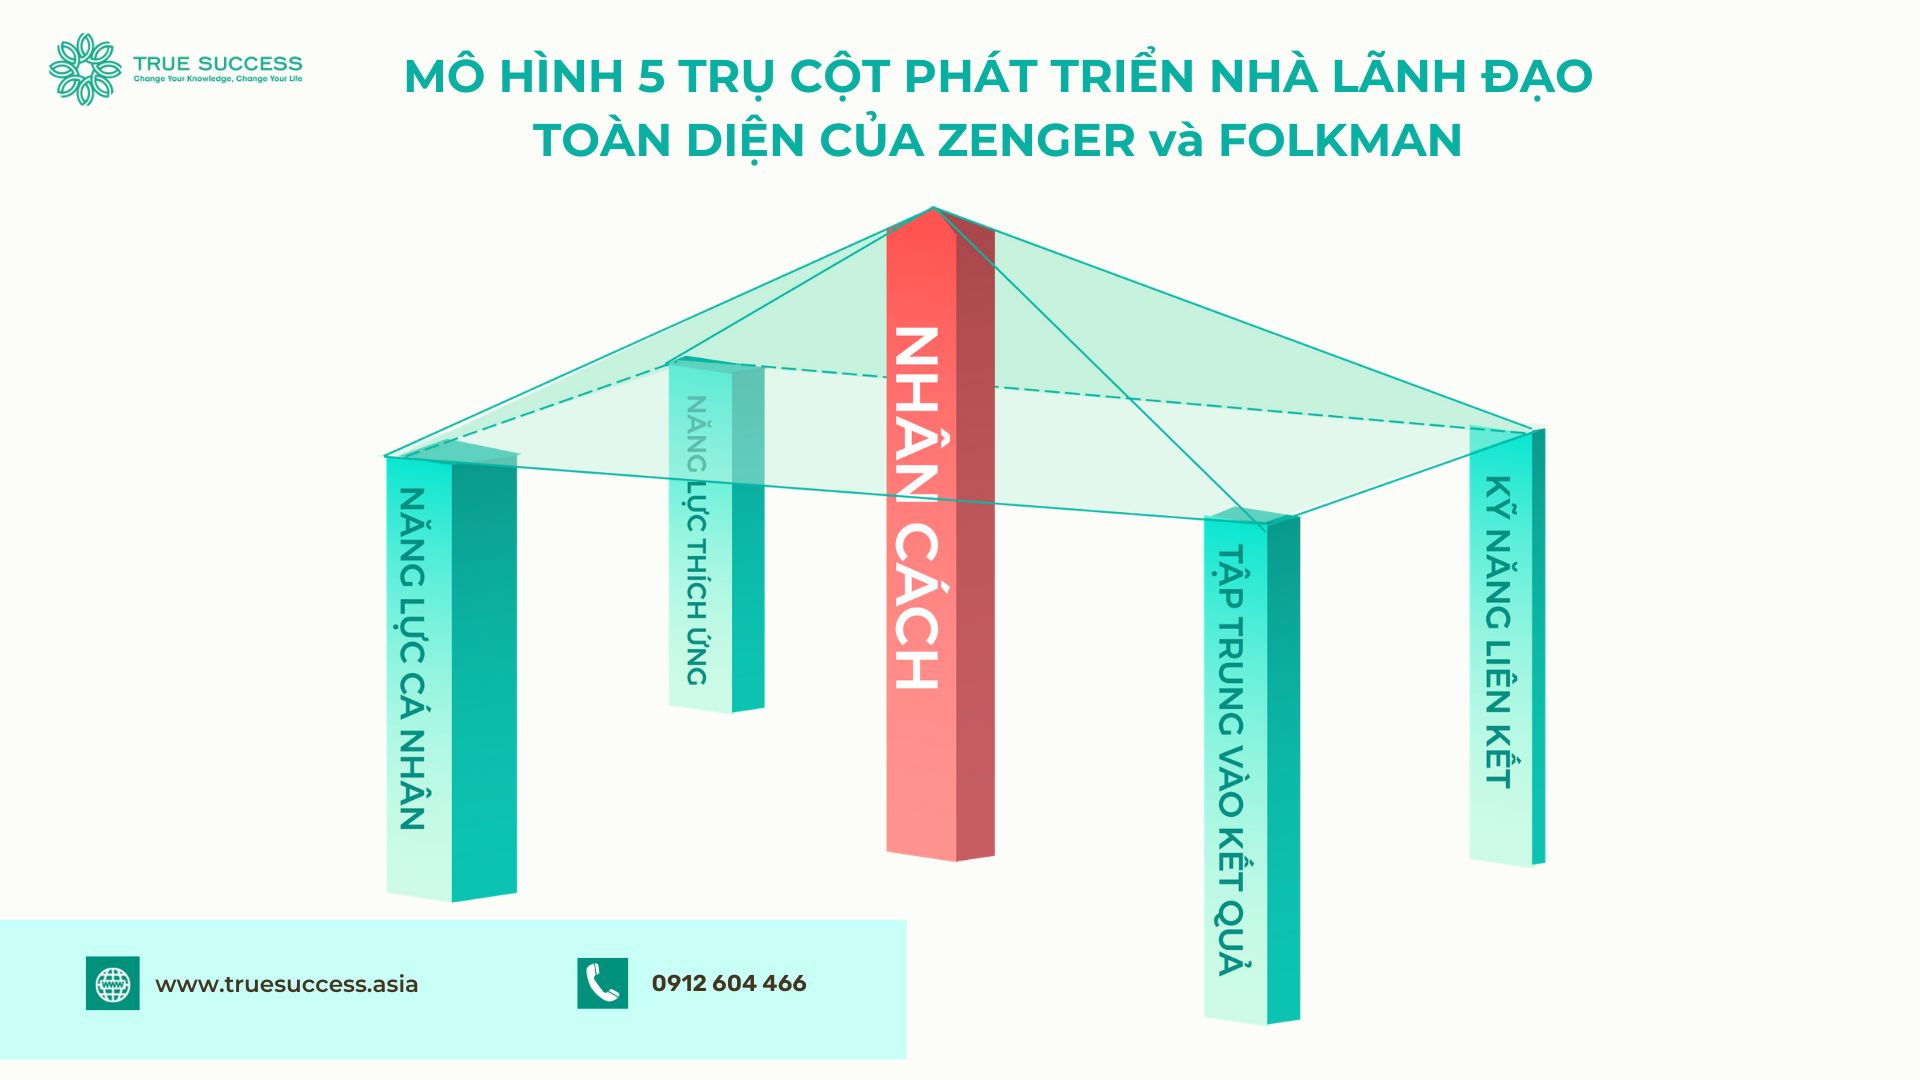 Mô hình 5 trụ cột phát triển nhà lãnh đạo toàn diện của Zenger và Folkman